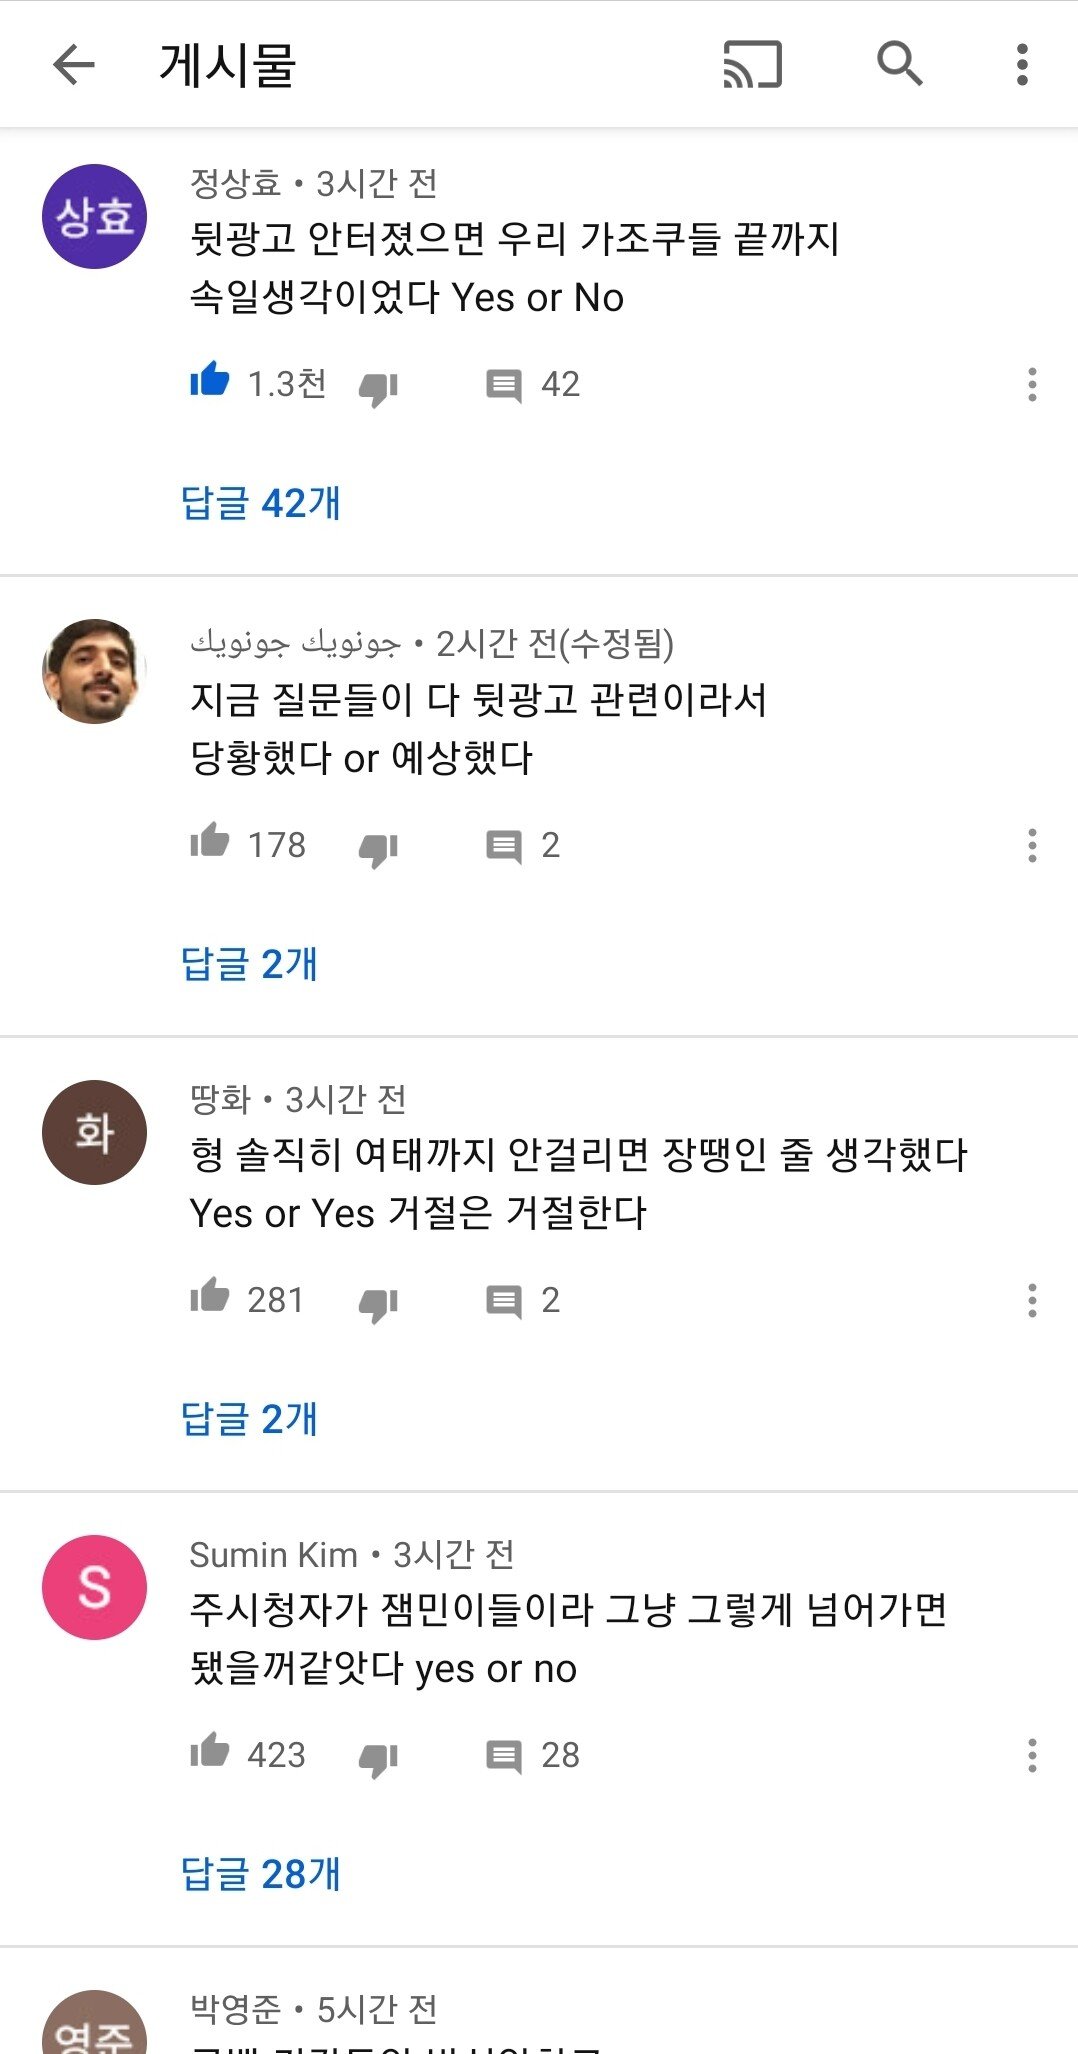 보겸 복귀 기념 Q&A 영상에서 훈훈한 팬들